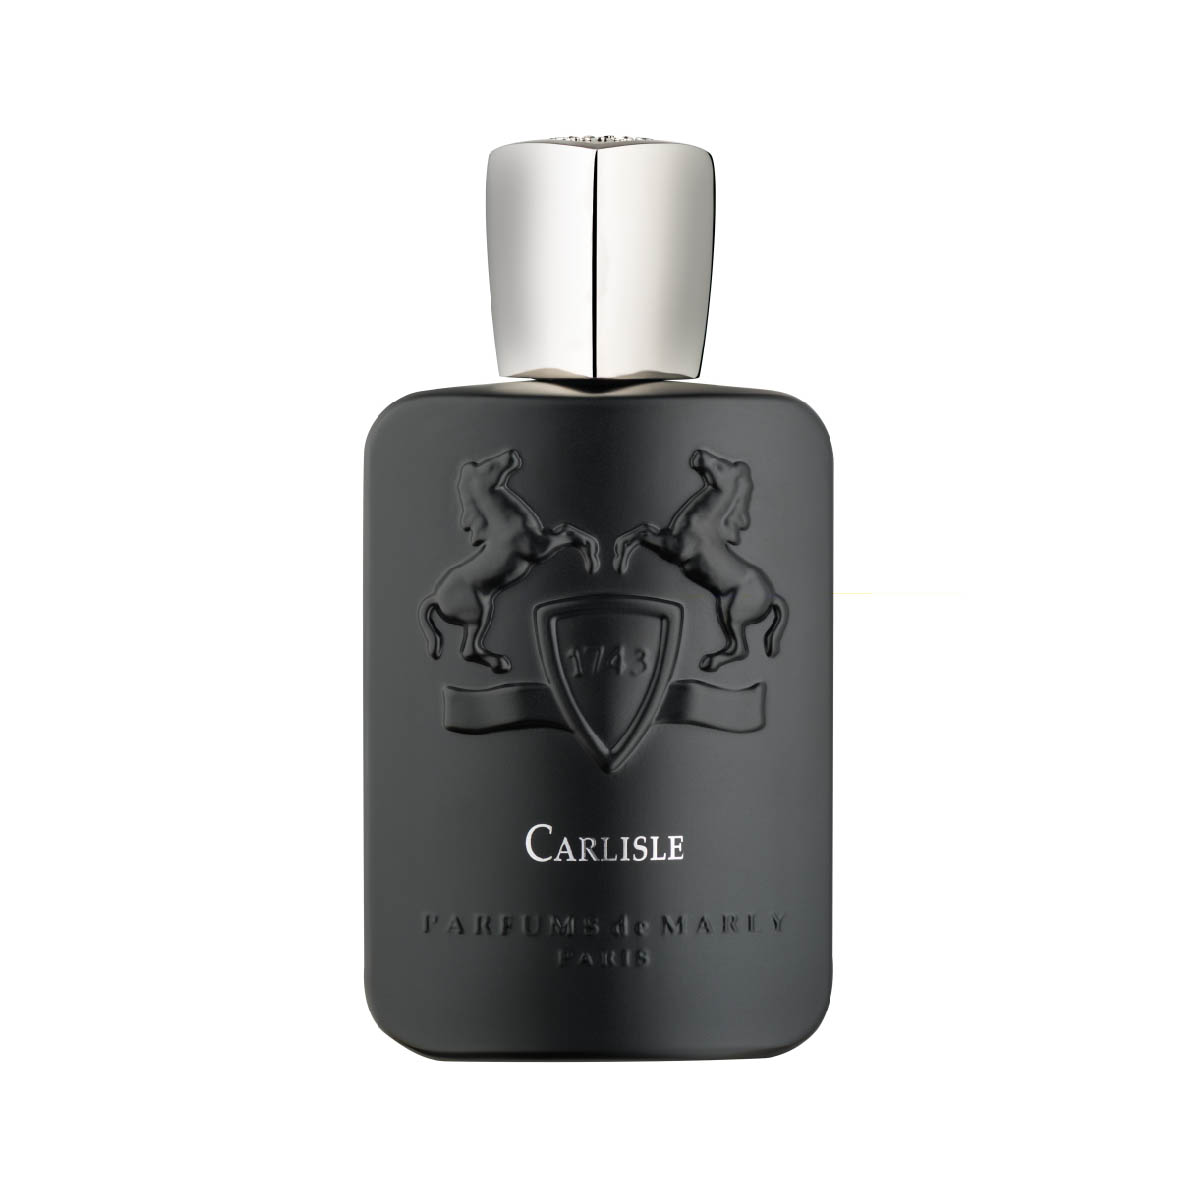 Carlisle Eau de Parfum 100ml - Parfums De Marly